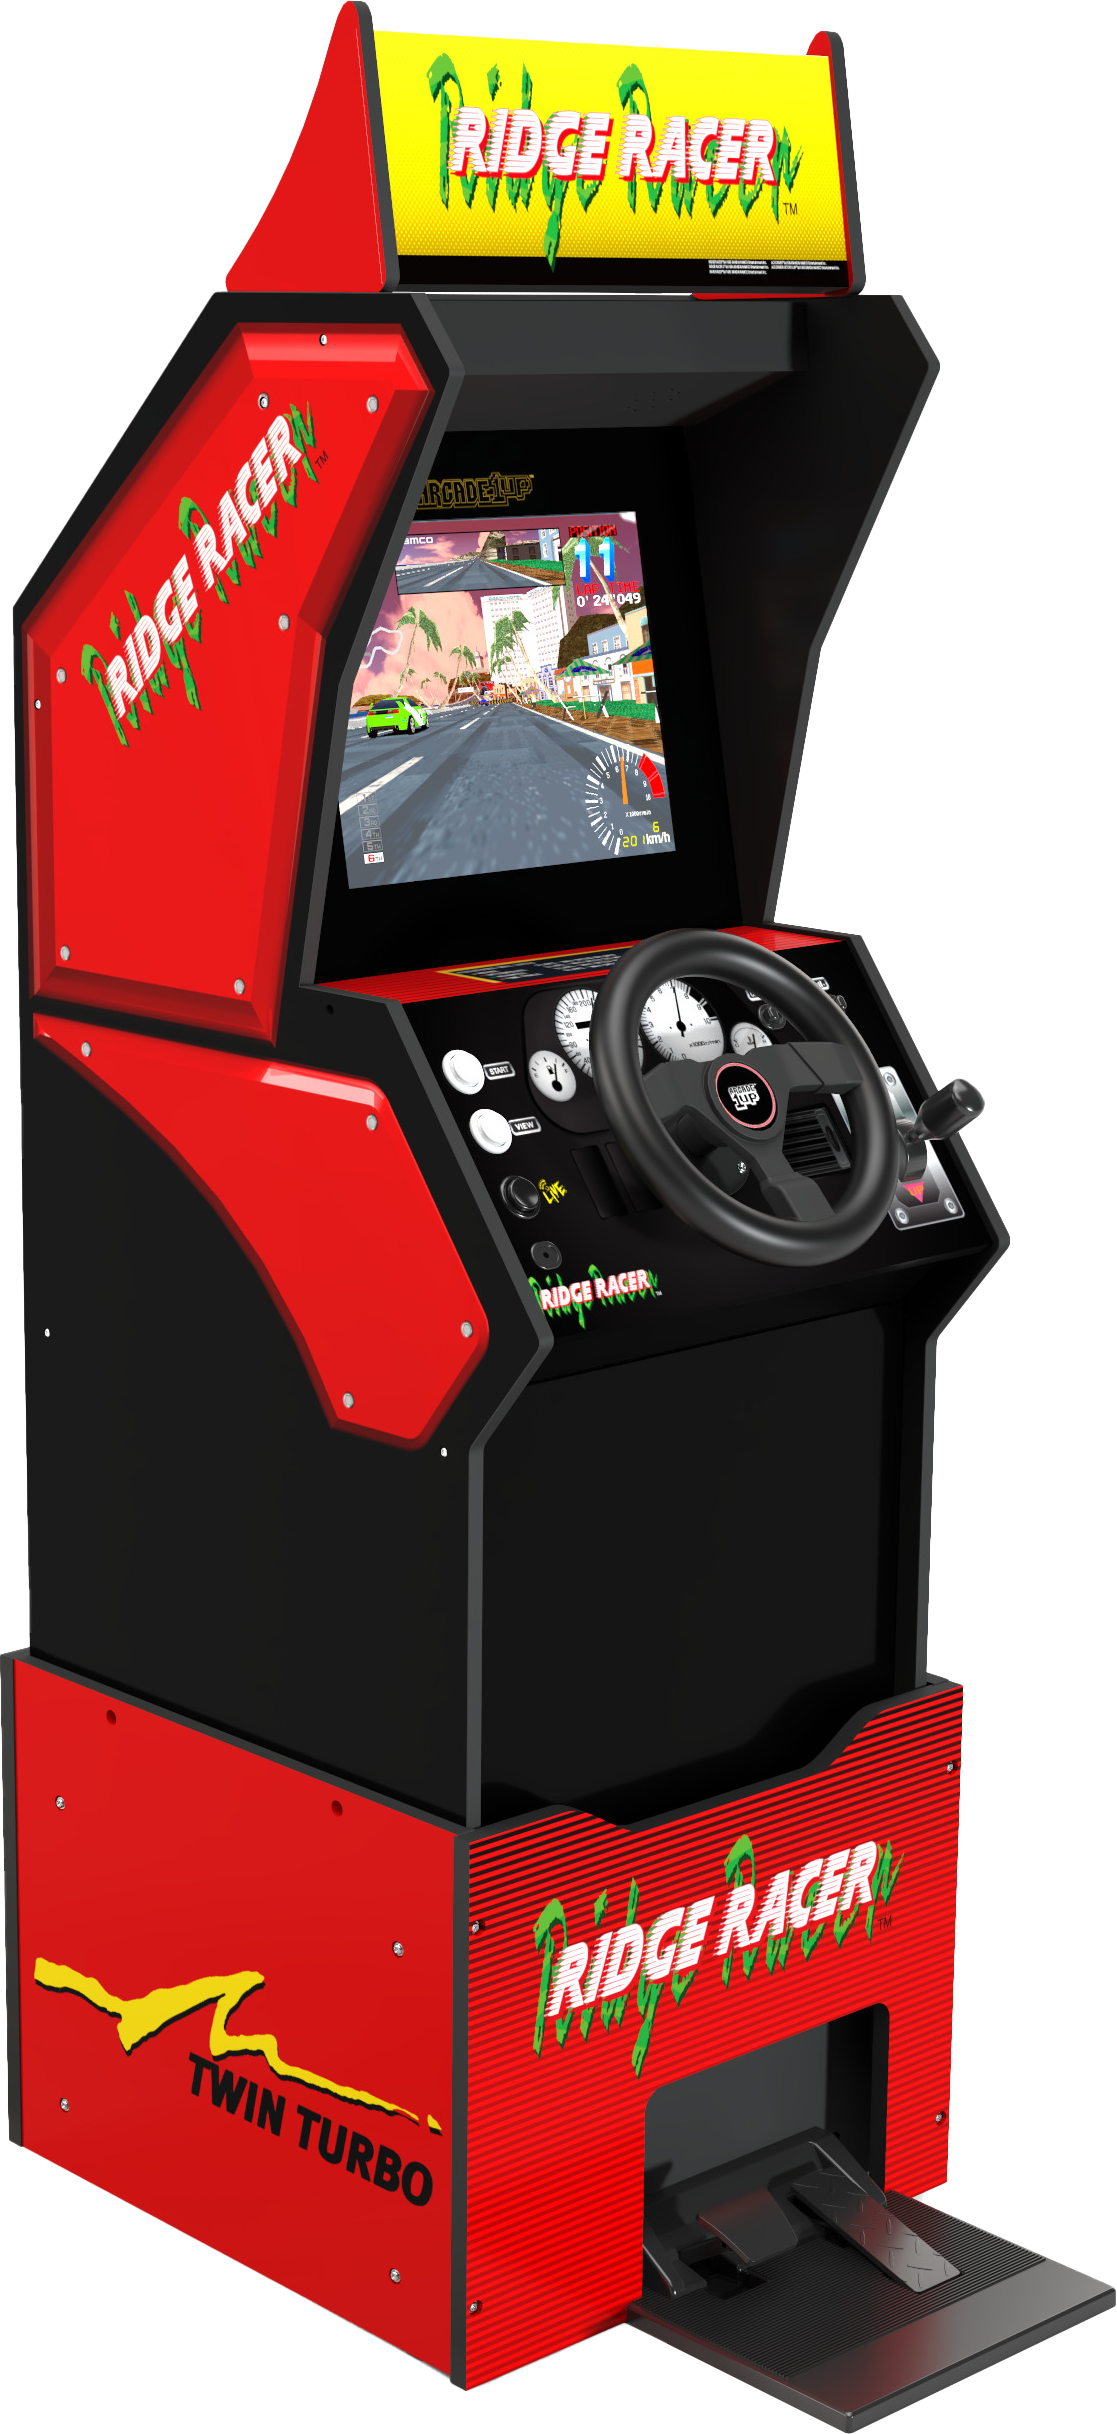 【新作再入荷】Arcade1Up, Ridge Racer Arcade 輸入品新品送料込 即納 (リッジレーサー・レイブレーサー・エースドライバー)2 その他